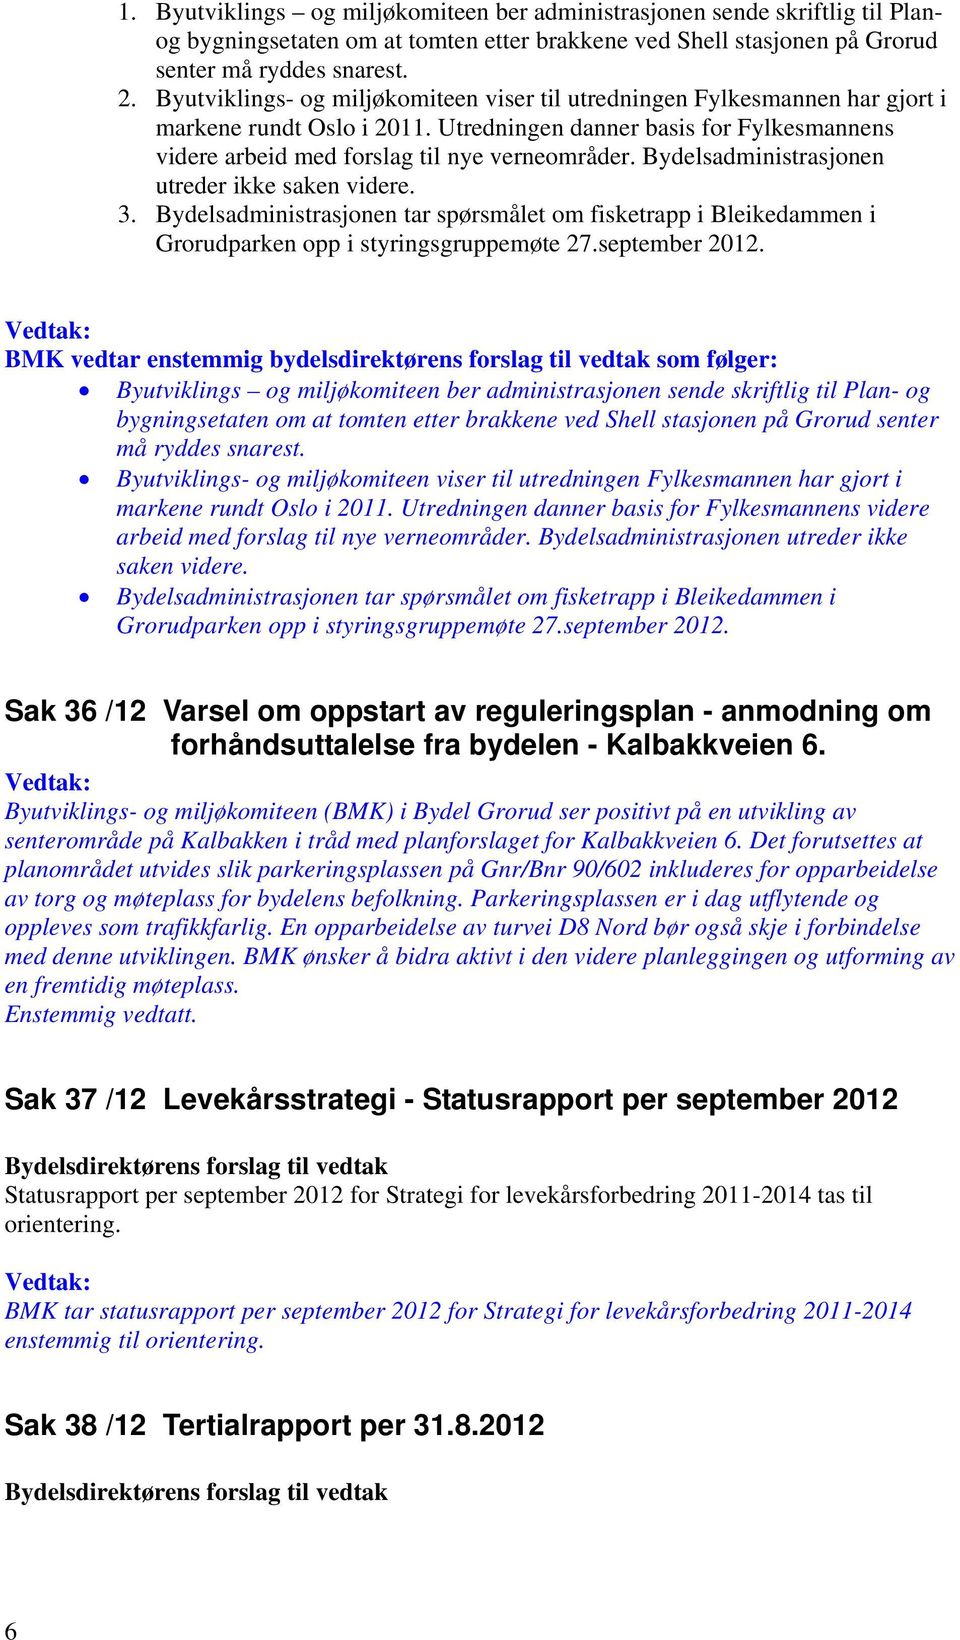 Bydelsadministrasjonen utreder ikke saken videre. 3. Bydelsadministrasjonen tar spørsmålet om fisketrapp i Bleikedammen i Grorudparken opp i styringsgruppemøte 27.september 2012.